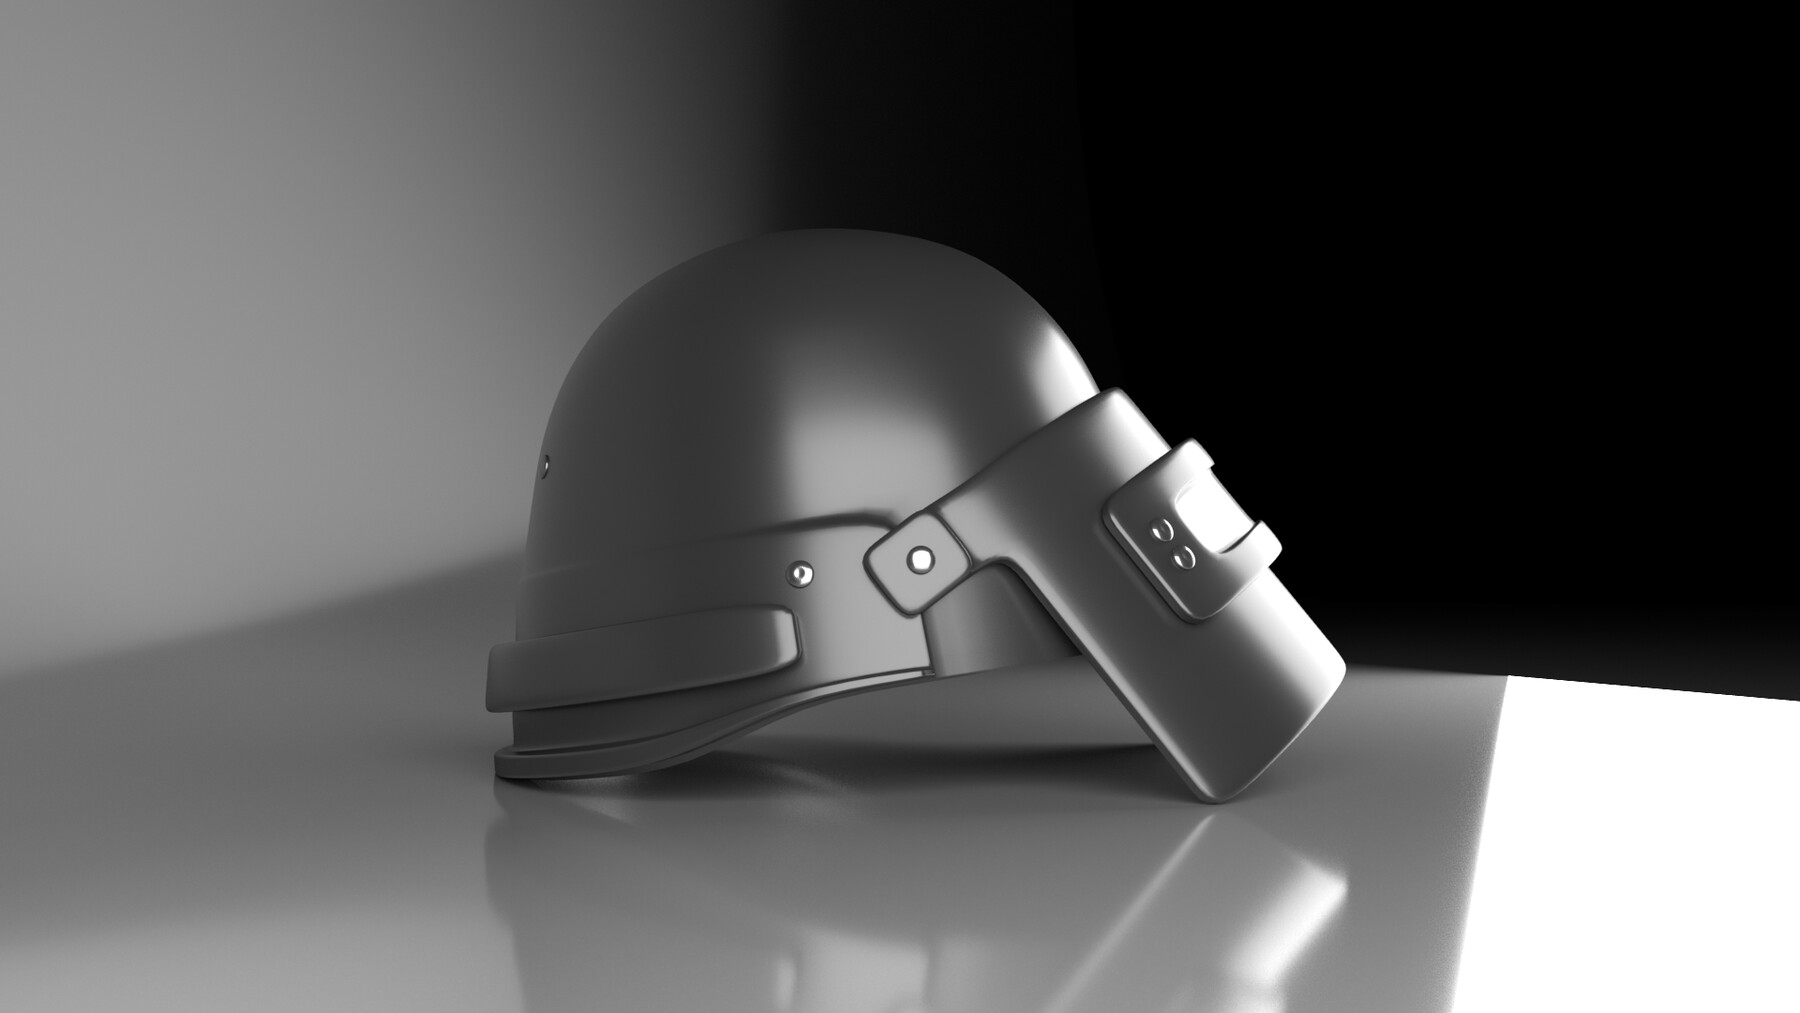 Pubg Level 3 Helmet 3D model